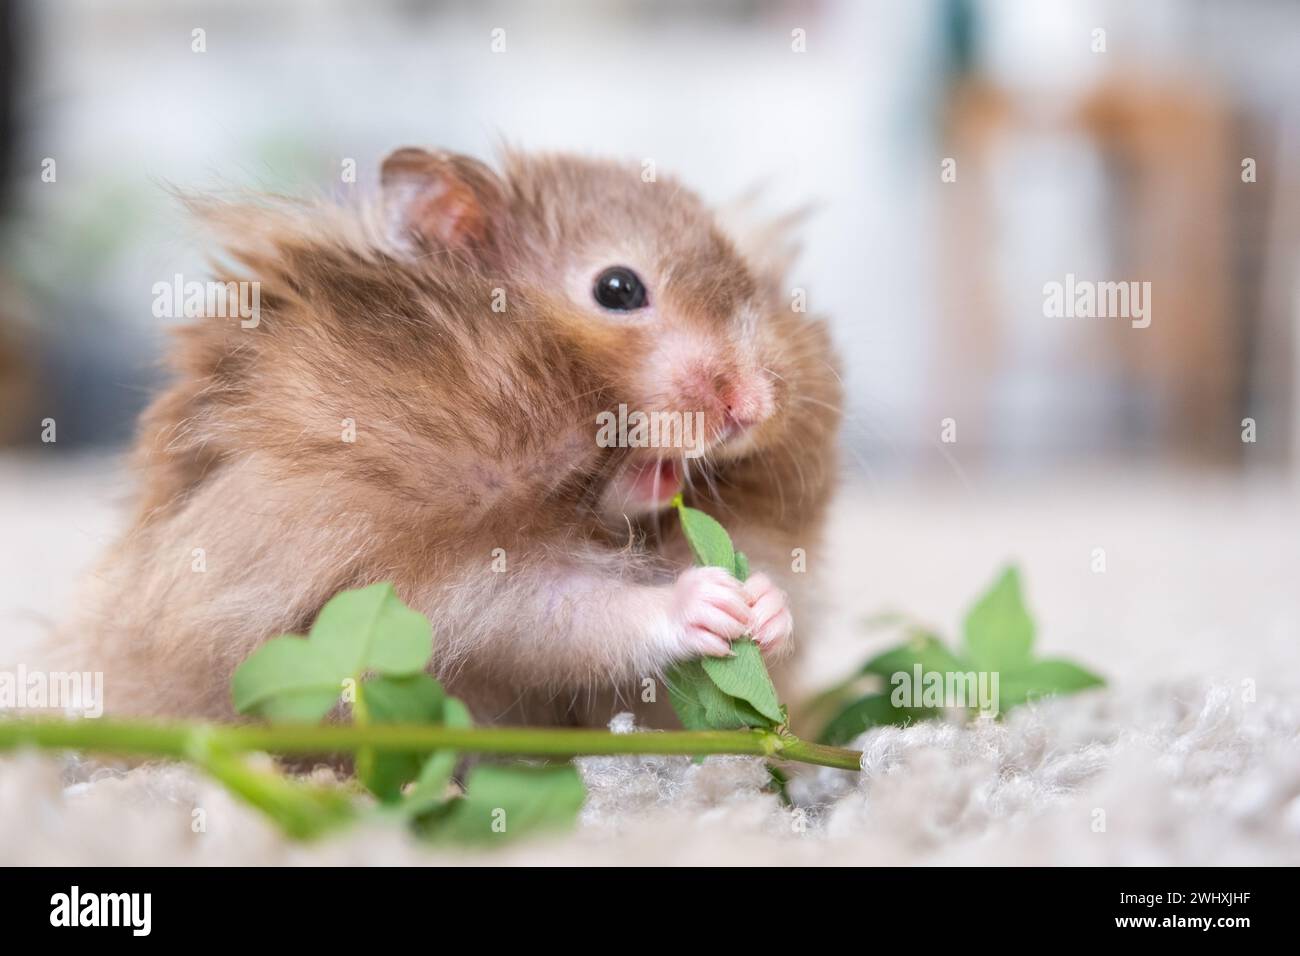 Lustiger, flauschiger syrischer Hamster isst einen grünen Kleeblatt, stopft seine Wangen. Futter für ein Nagetier, Vitamine. Nahaufnahme Stockfoto